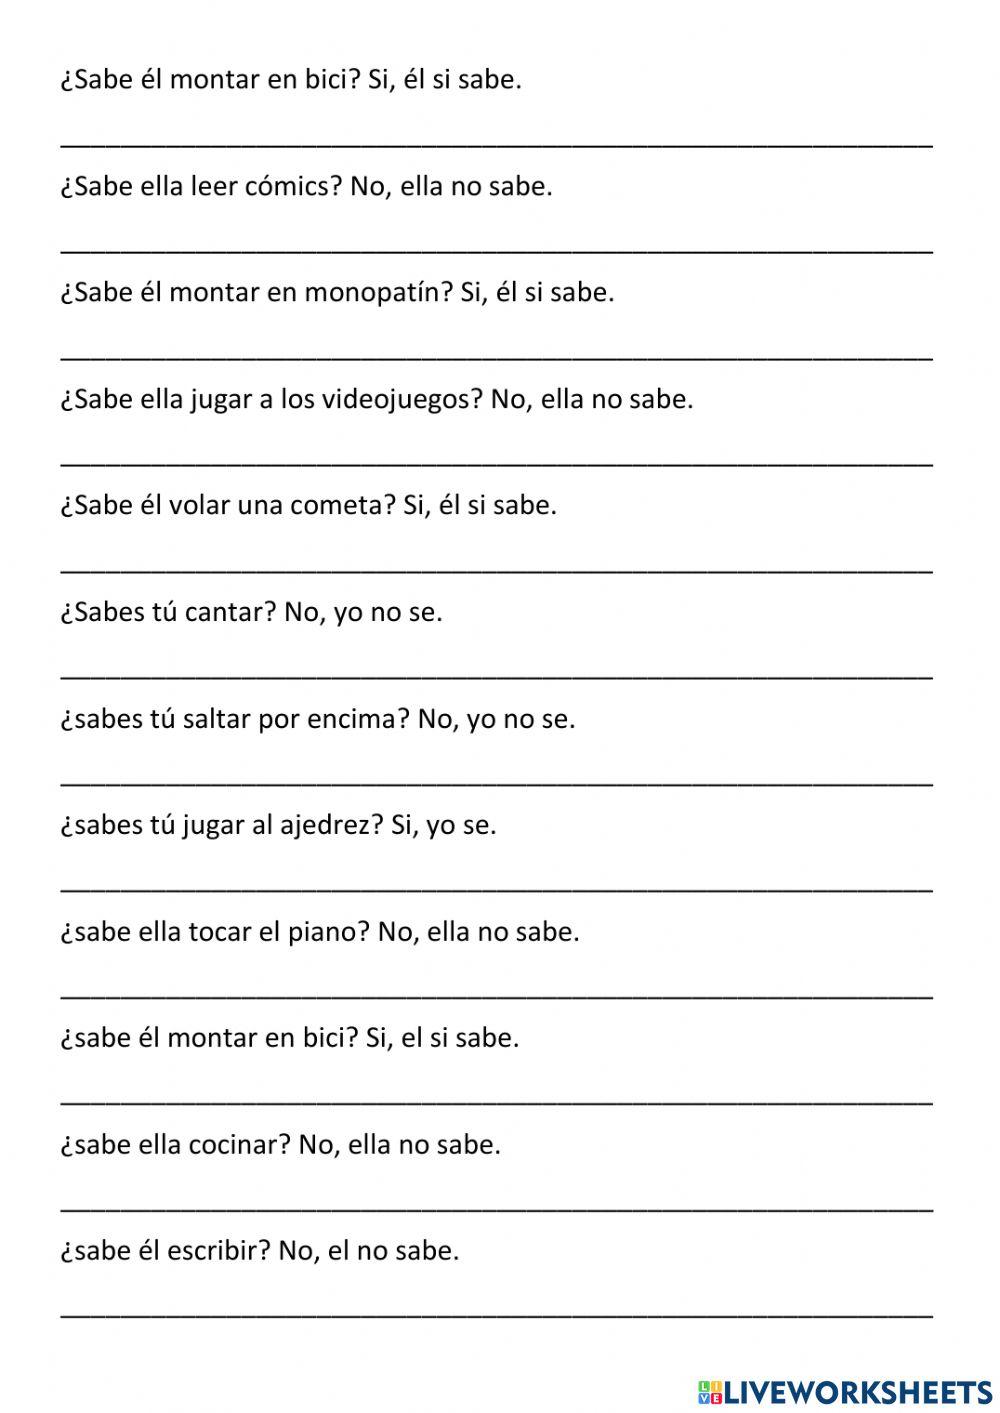 Gramática - verbo can - questions 2